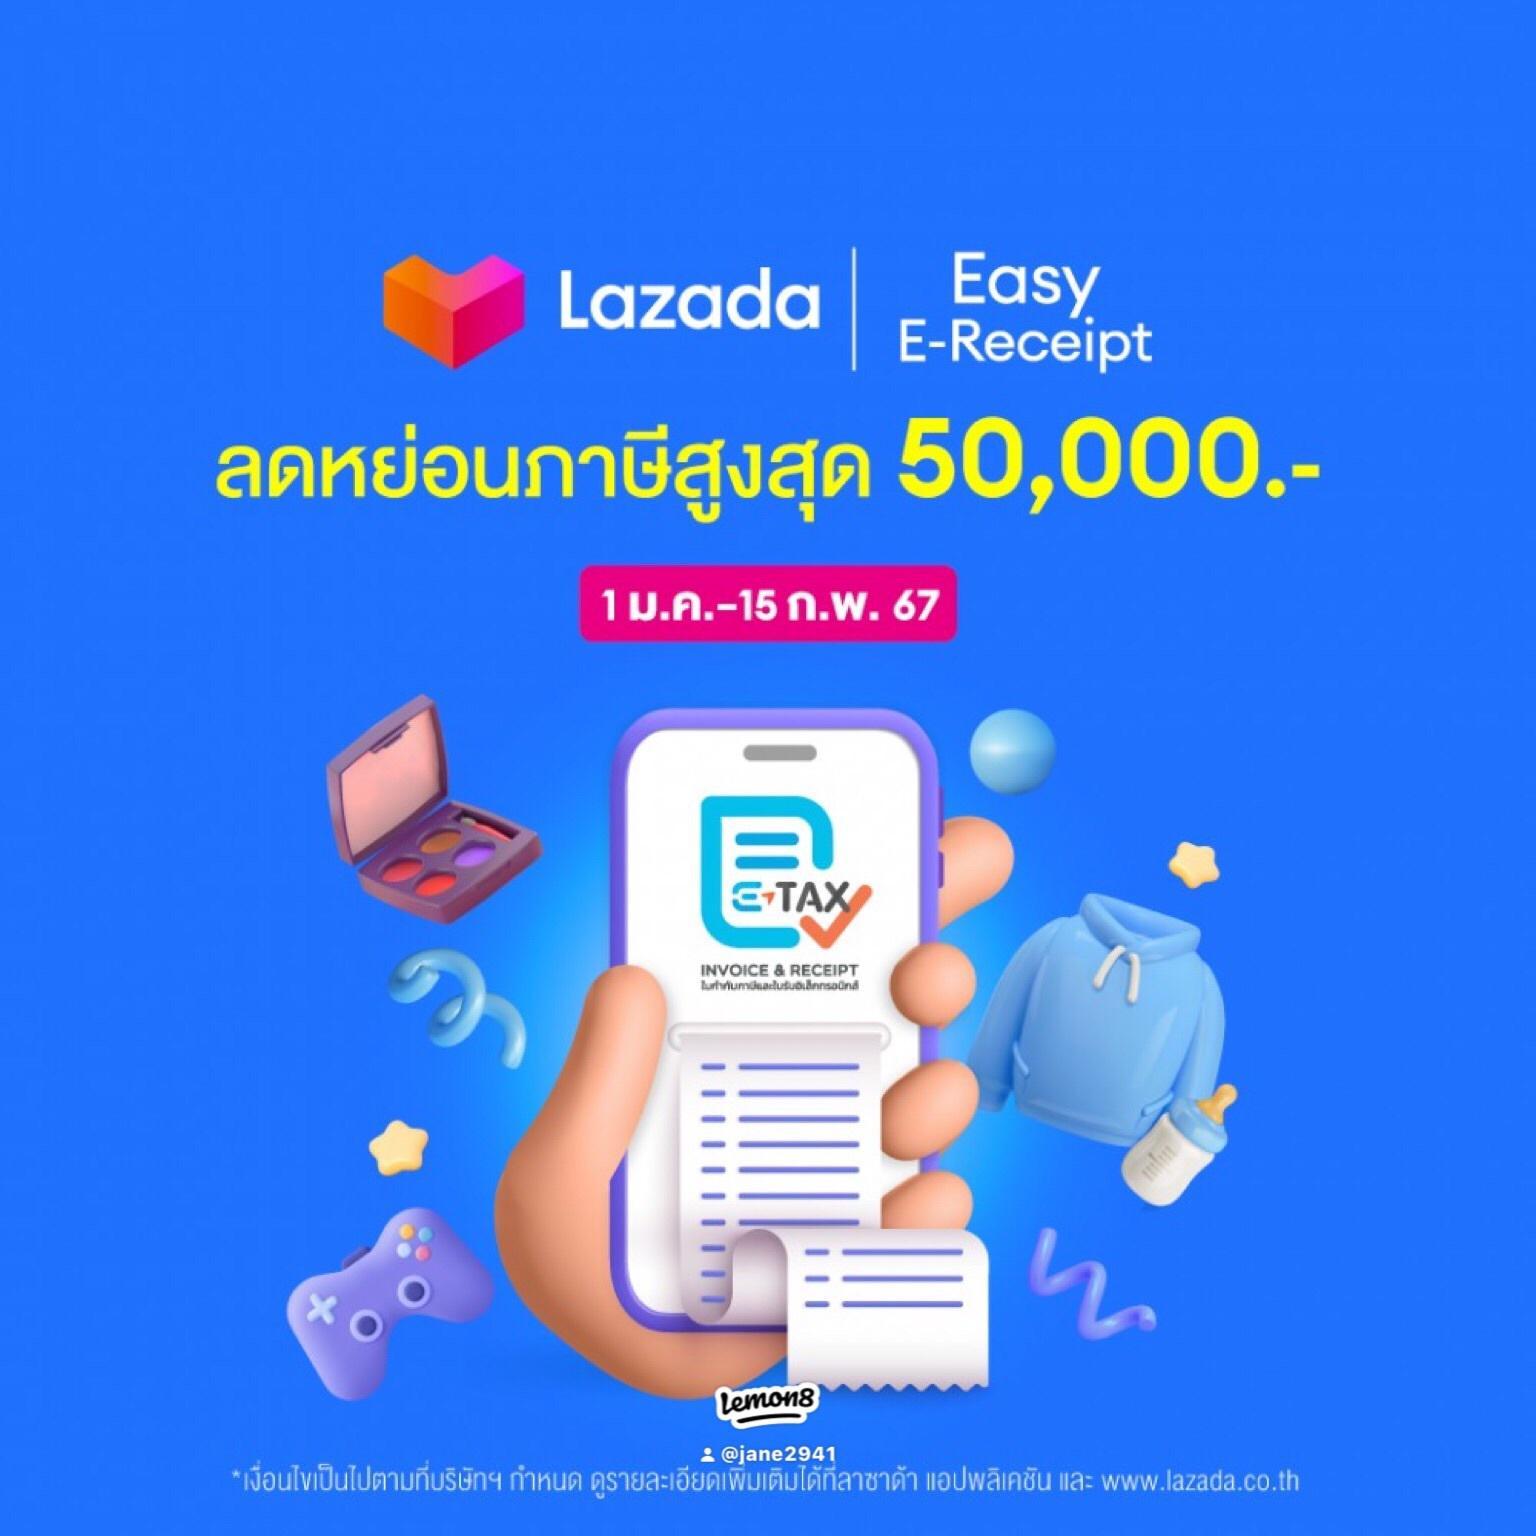 ภาพหน้าปก Lazada Easy E-Receipt 2567 ช้อปจัดเต็ม 🧾💸 💙ช้อปสนุก พร้อมนำใบเสร็จอิเล็กทรอนิกส์ ลดหย่อนภาษีได้สูงสุดถึง 50,000 บาท 💙ช้อปสินค้าลดหย่อนภาษีได้ง่ายๆ เพียงสังเกตป้าย Easy E-Receipt  ที่:0